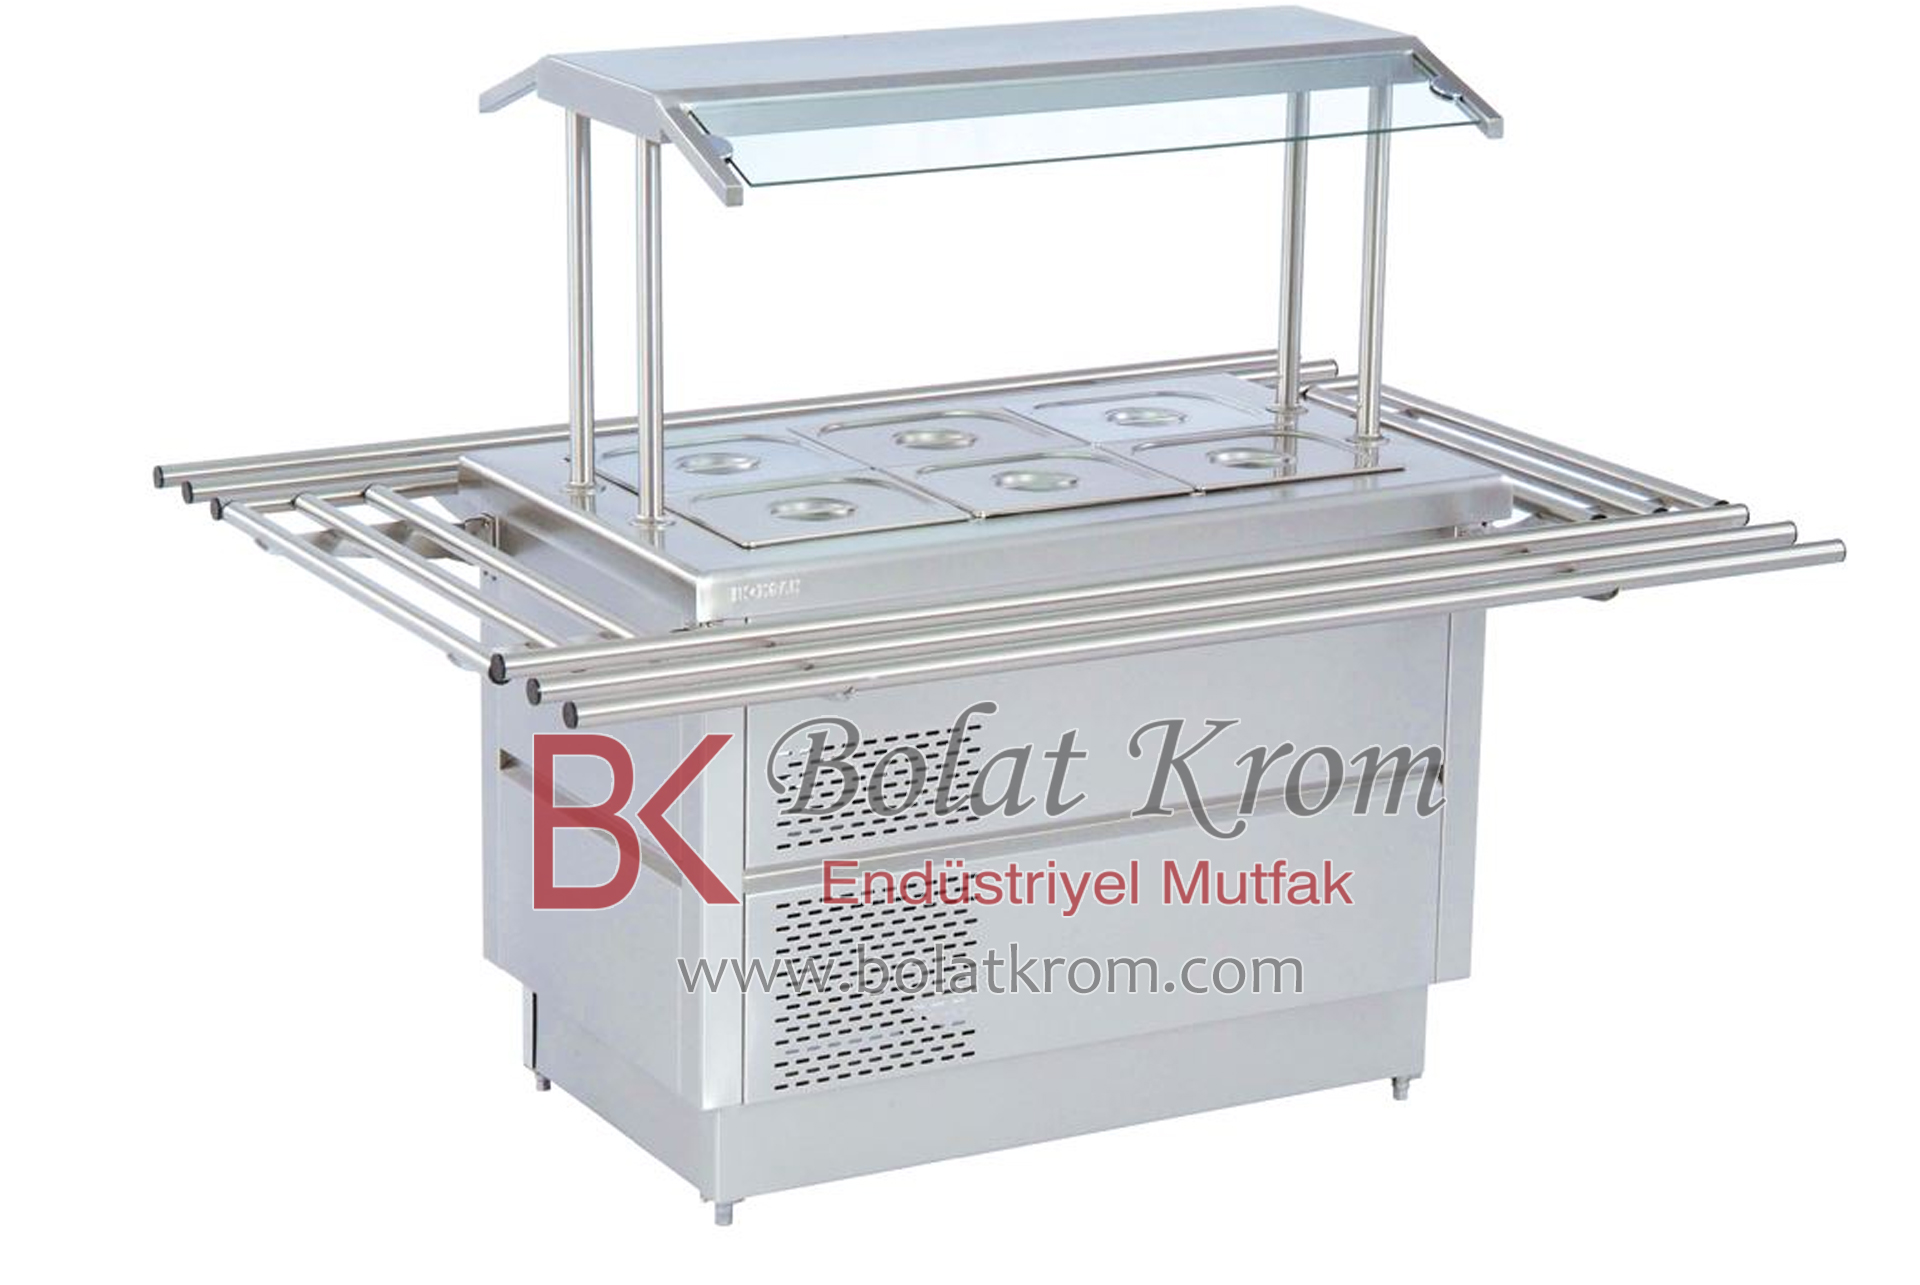 Servis ve Teşhir Ürünleri, Salat Bar özellikleri, ebatları ve üretimi İzmir'de Bolat Krom Endüstriyel Mutfak Ekipmanları tarafından üretilmektedir.